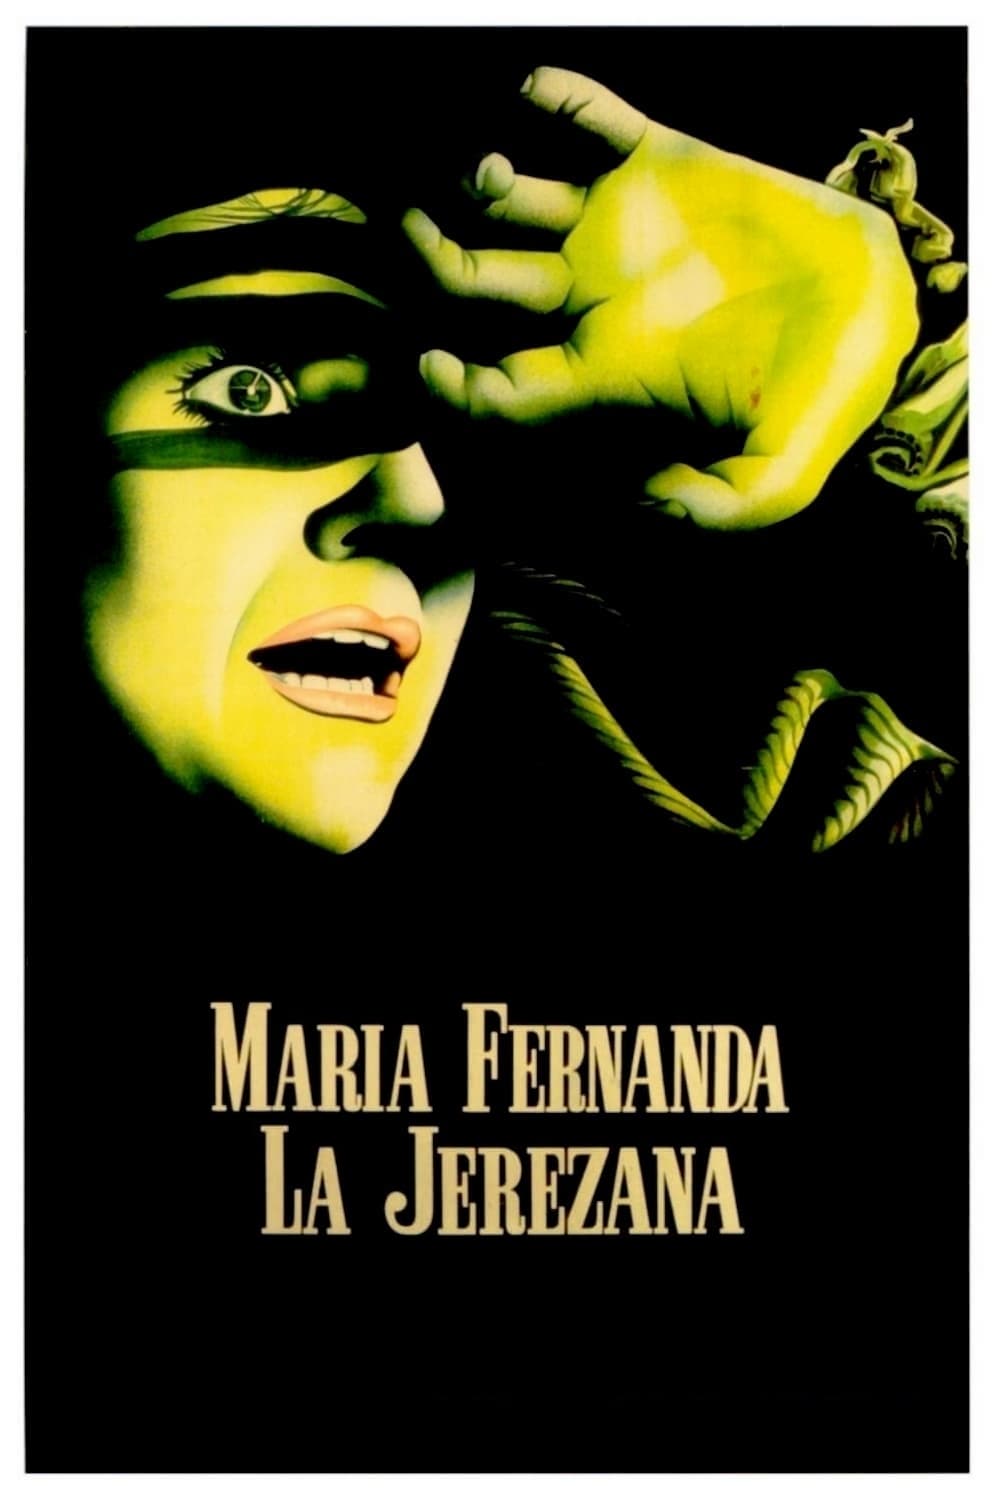 María Fernanda la Jerezana (1947)